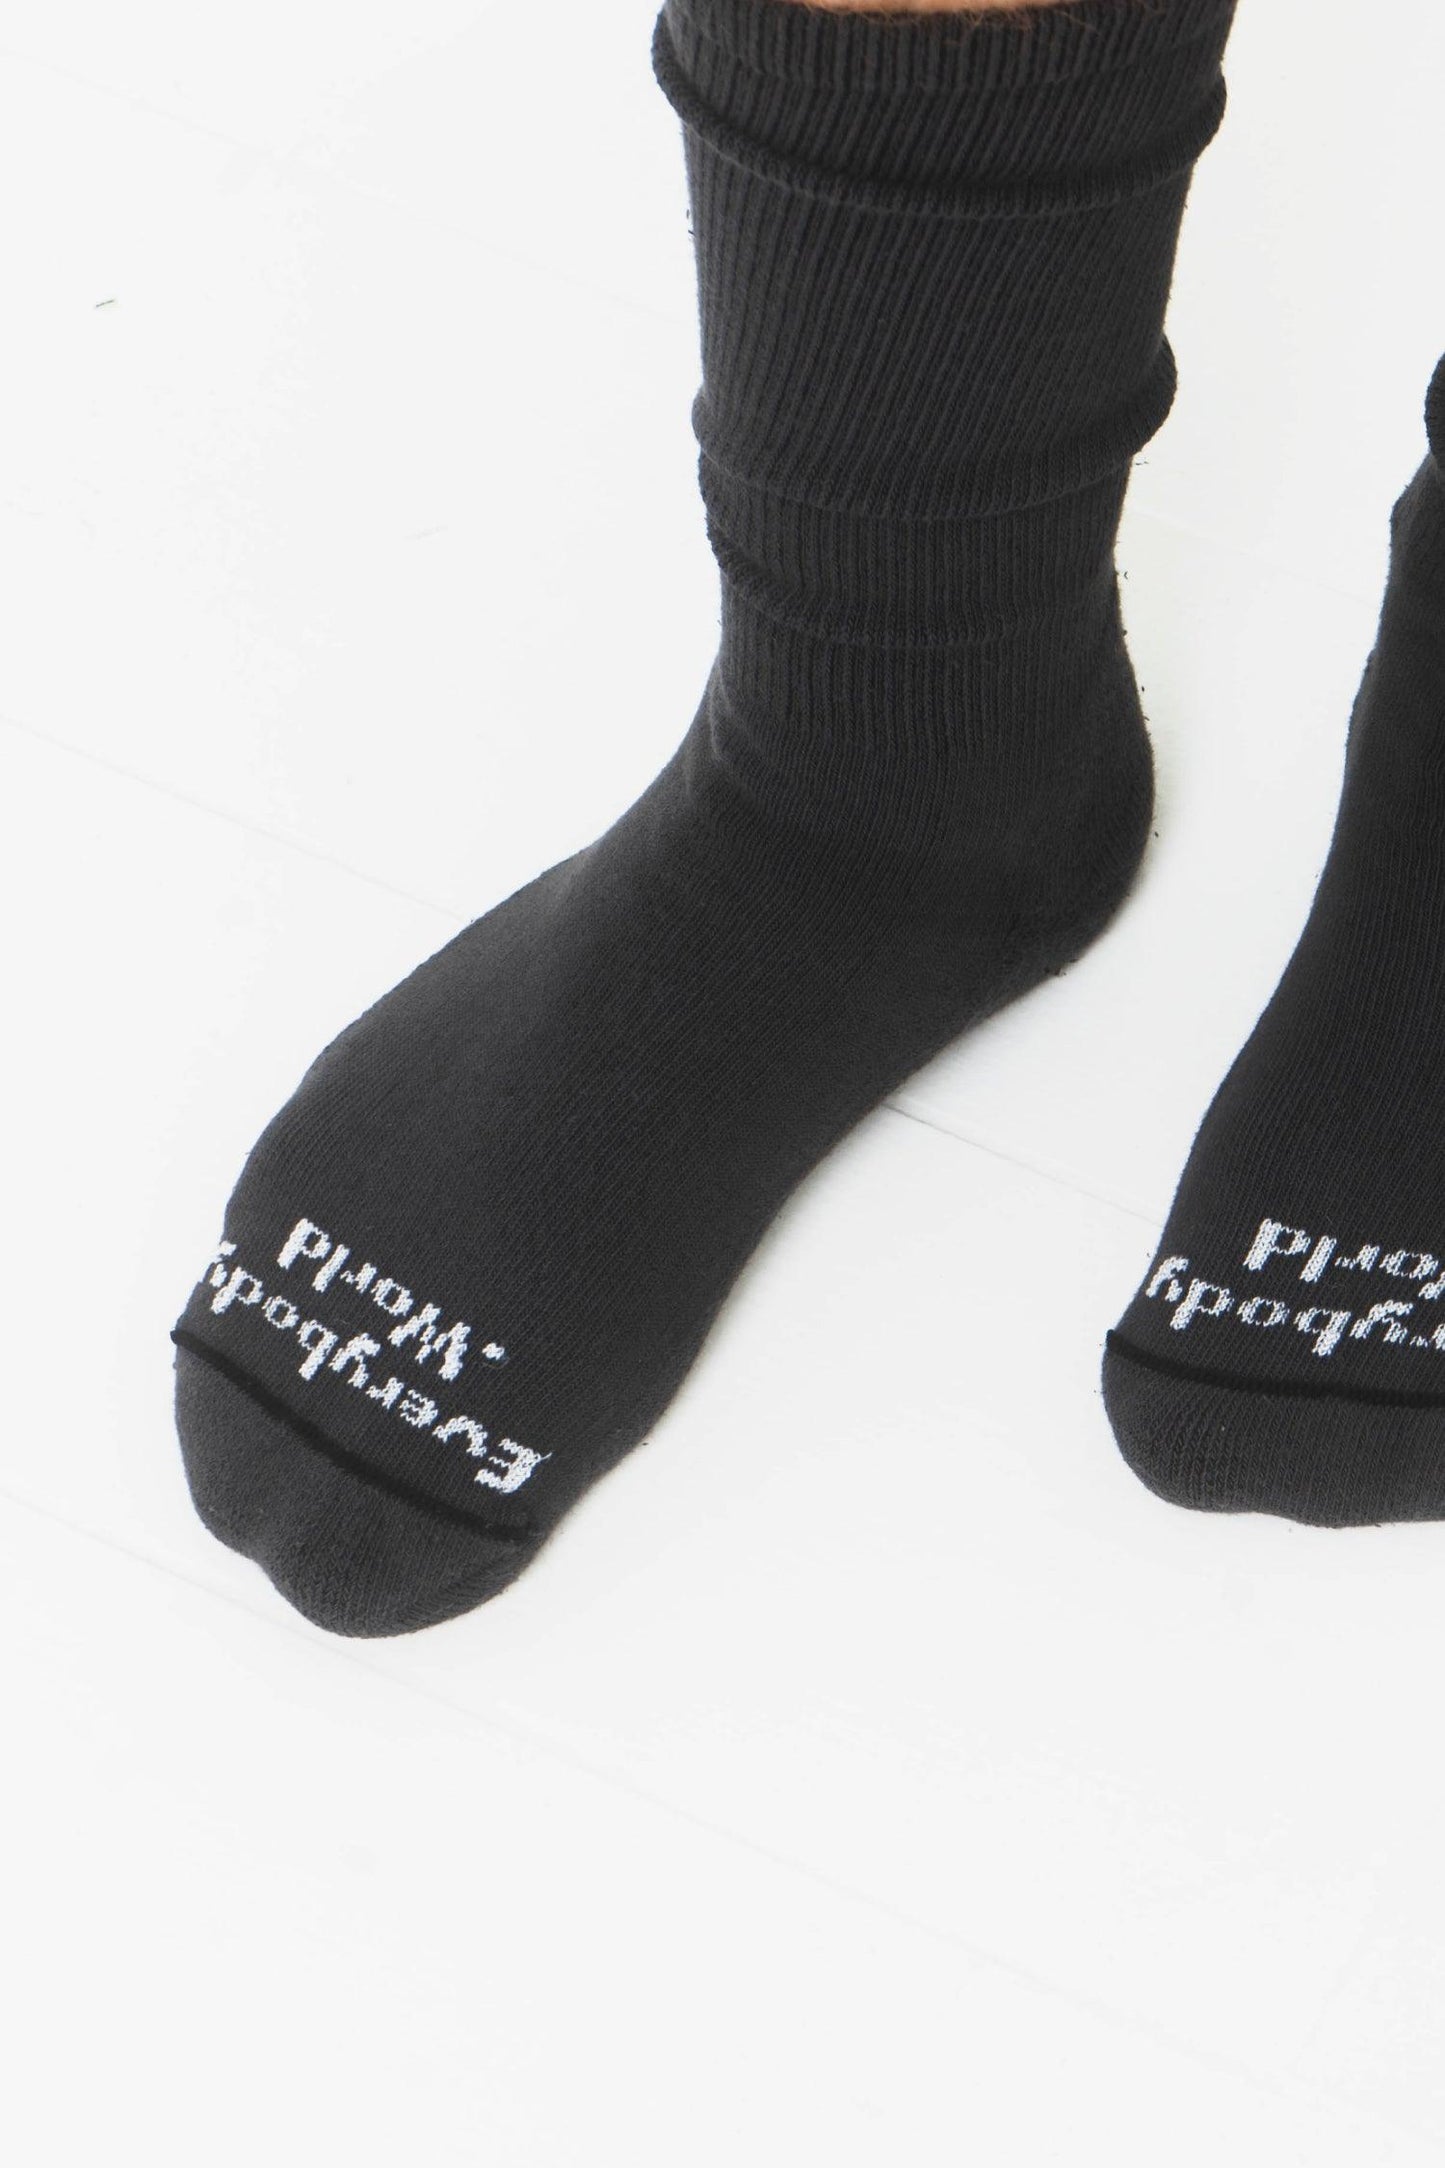 Squishy Socks